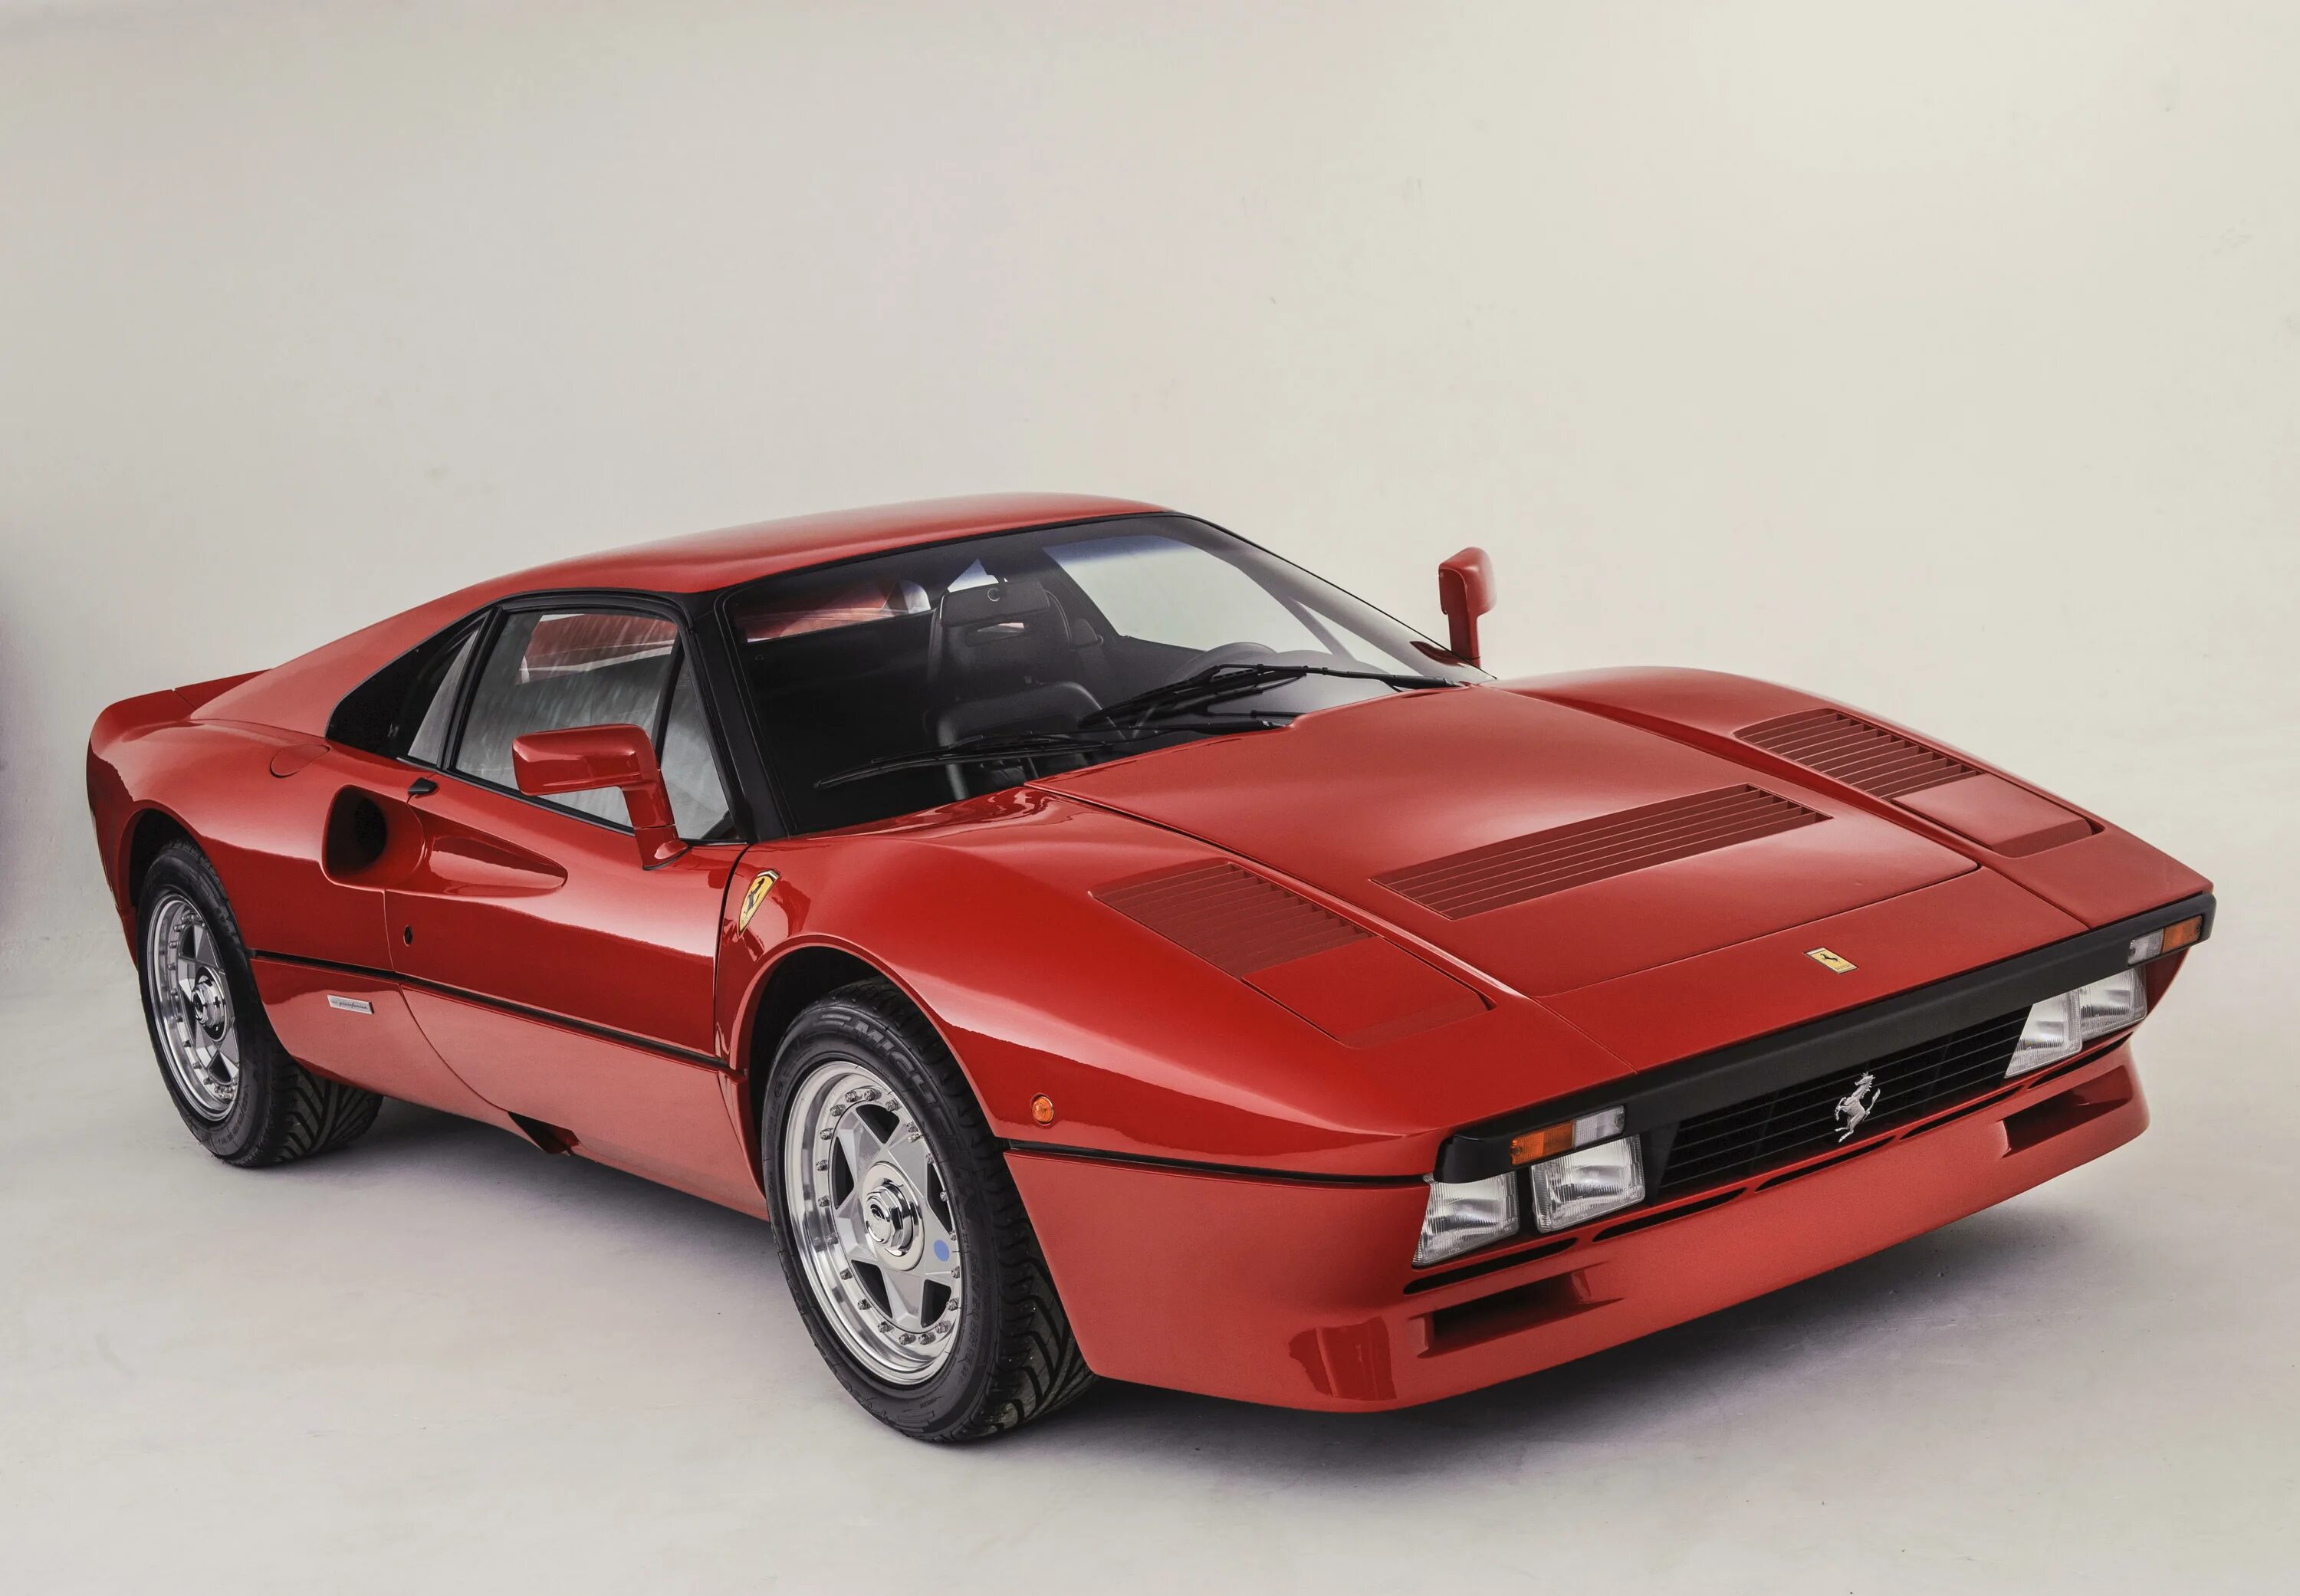 Ferrari 288 gto. Ferrari 288 GTO 1984. Ferrari GTO 1984. Феррари ГТО 1984.